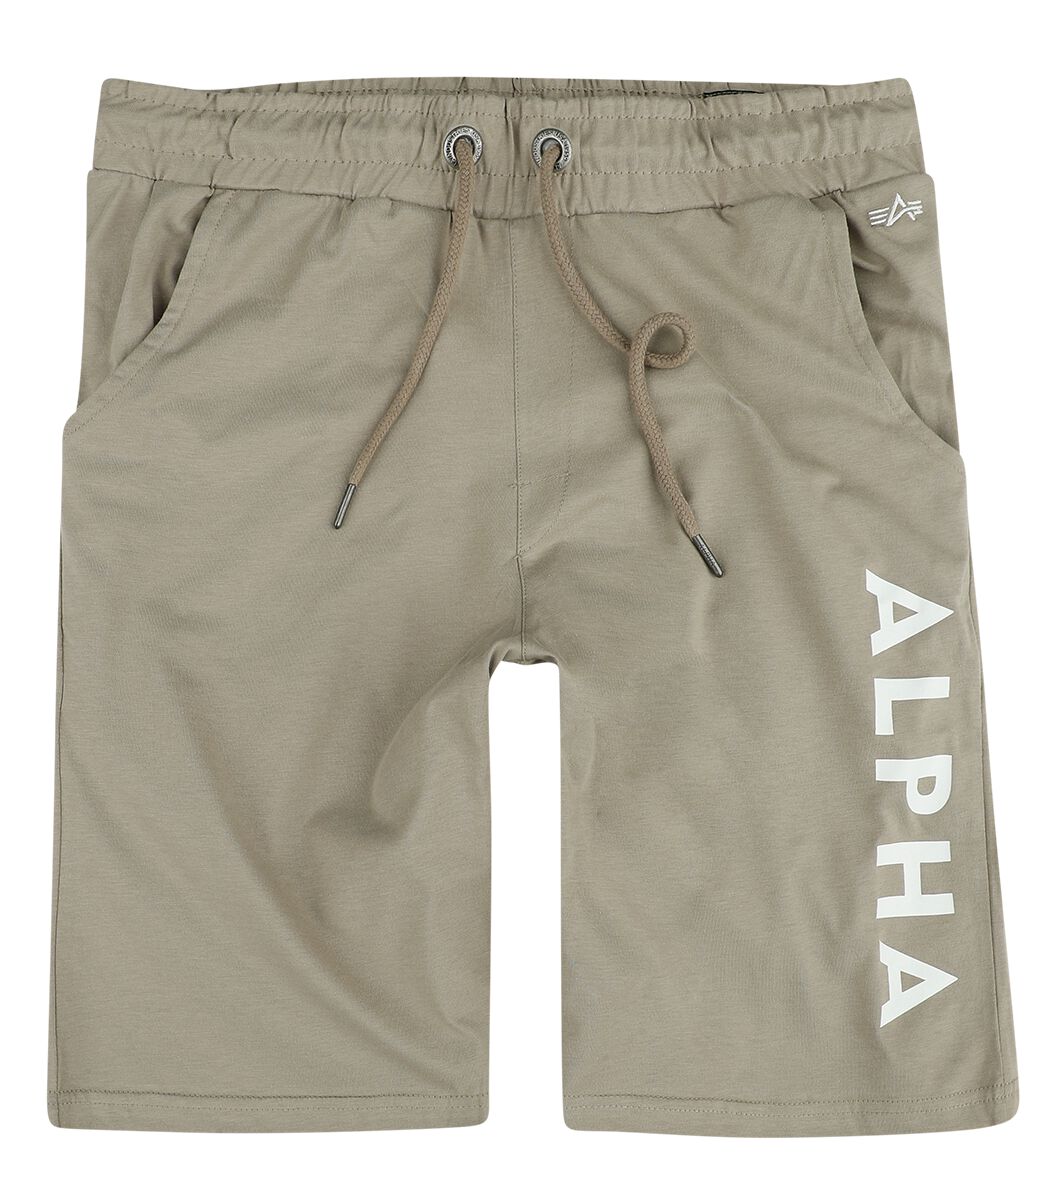 alpha industries short - alpha jersey short - s bis xxl - fÃ¼r mÃ¤nner - grÃ¶ÃŸe xl - sand